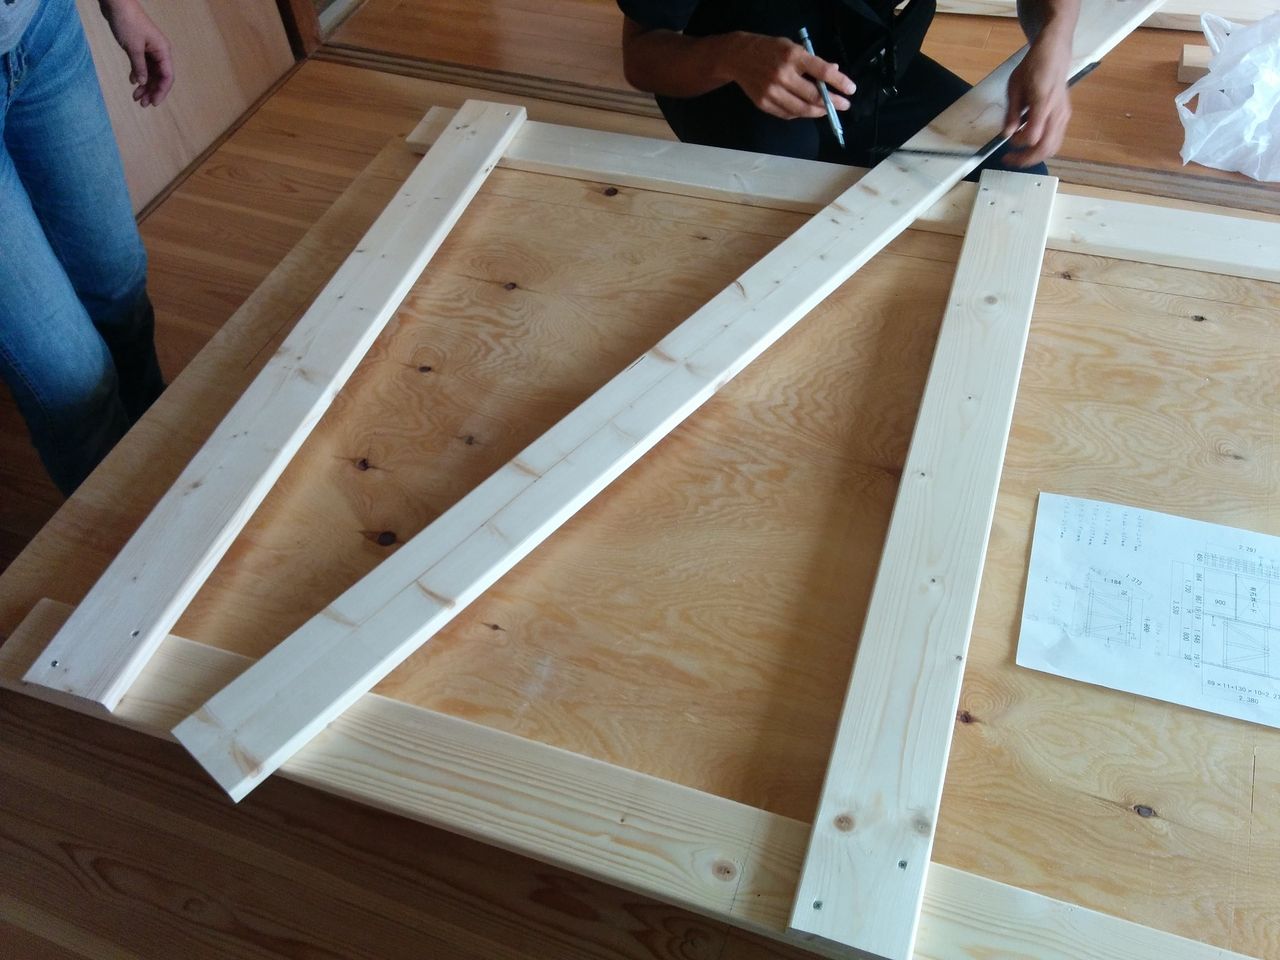 1×4材をカットして木ビスを使って組み立てていきます。
これは先程作った2つのラダー部分をつなぐためと補強のための部材になります。